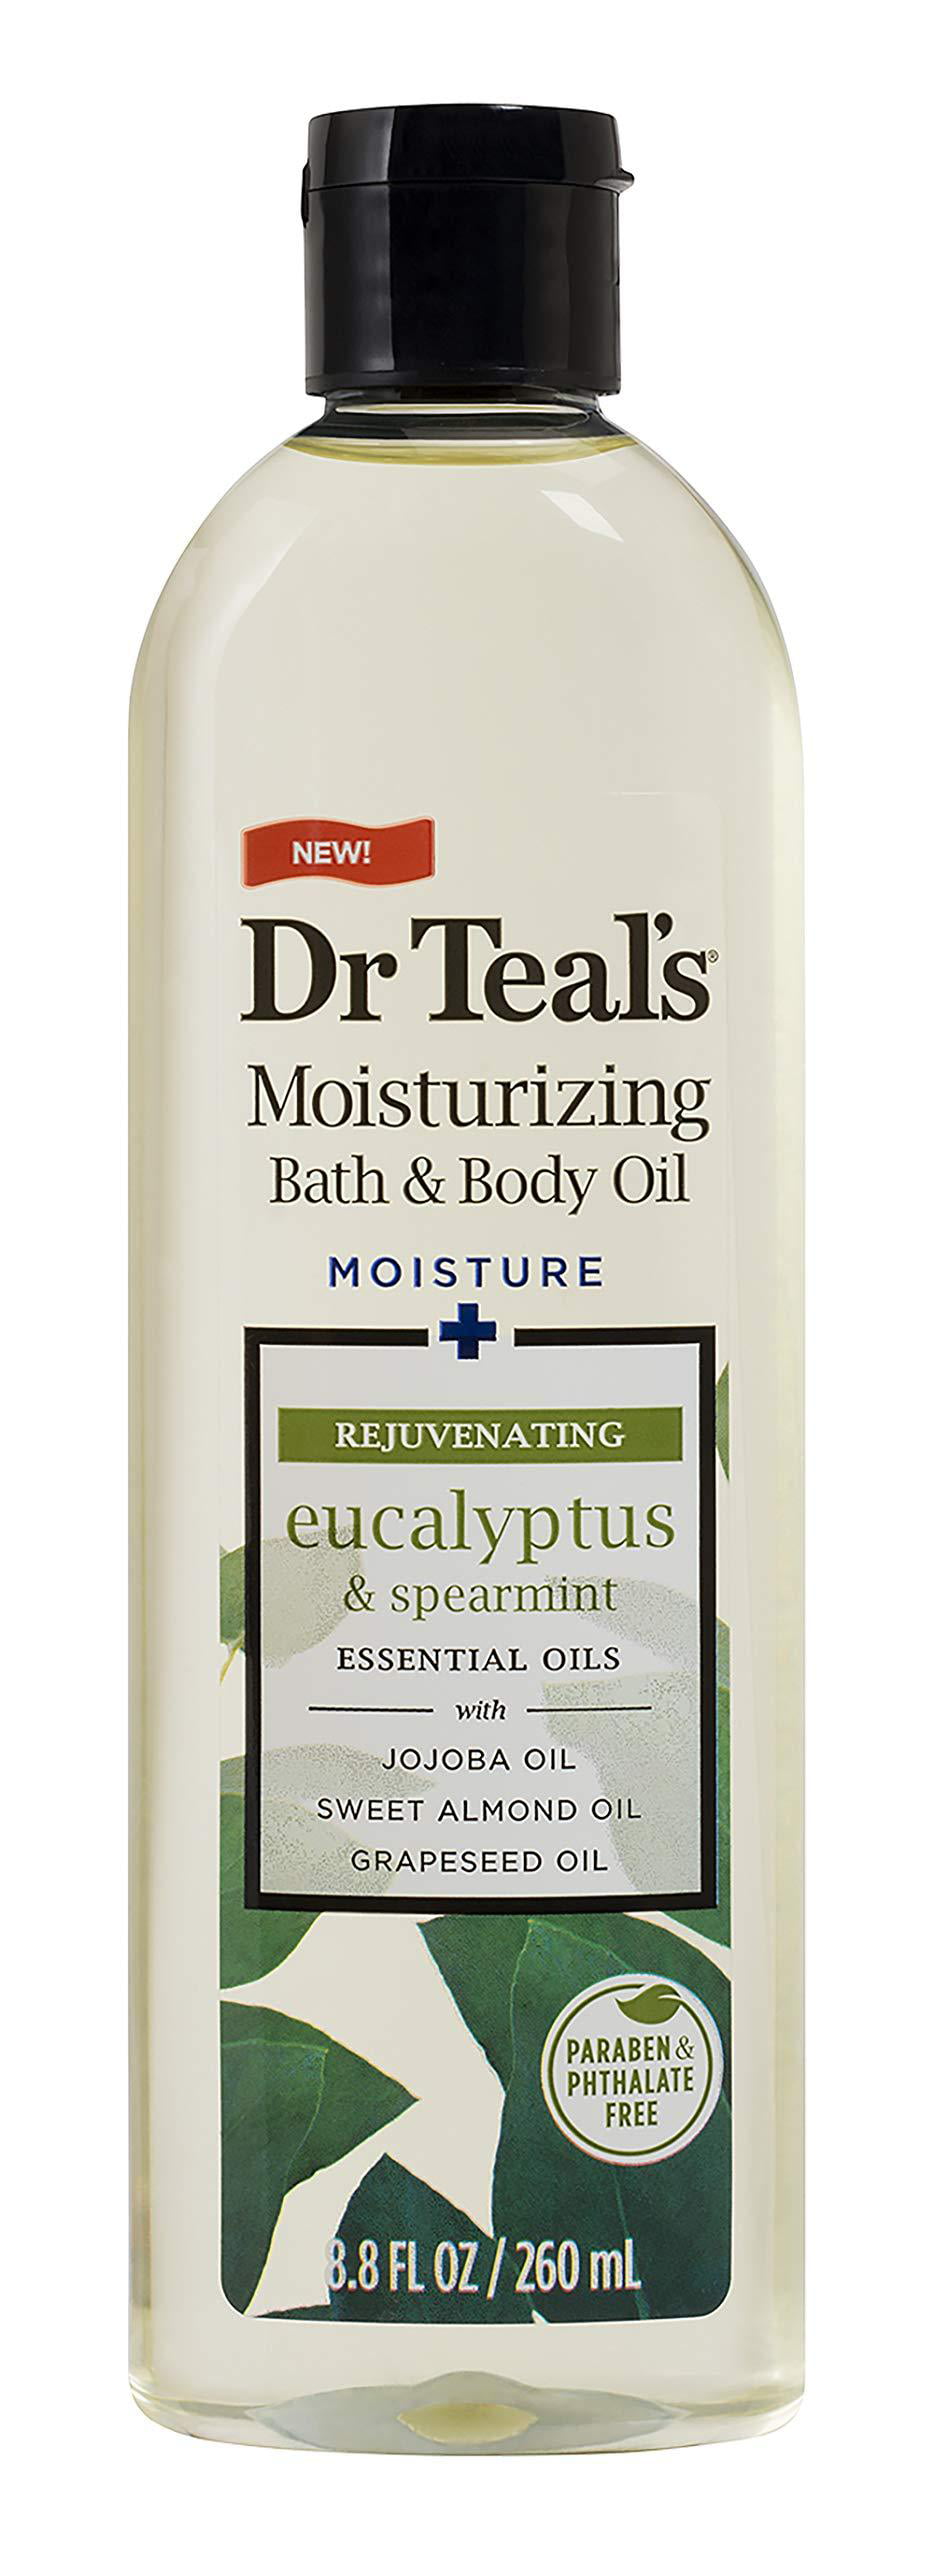 Dr Teals Moisturizing Bath And Body Oil Eucalyptus And Spearmint 88